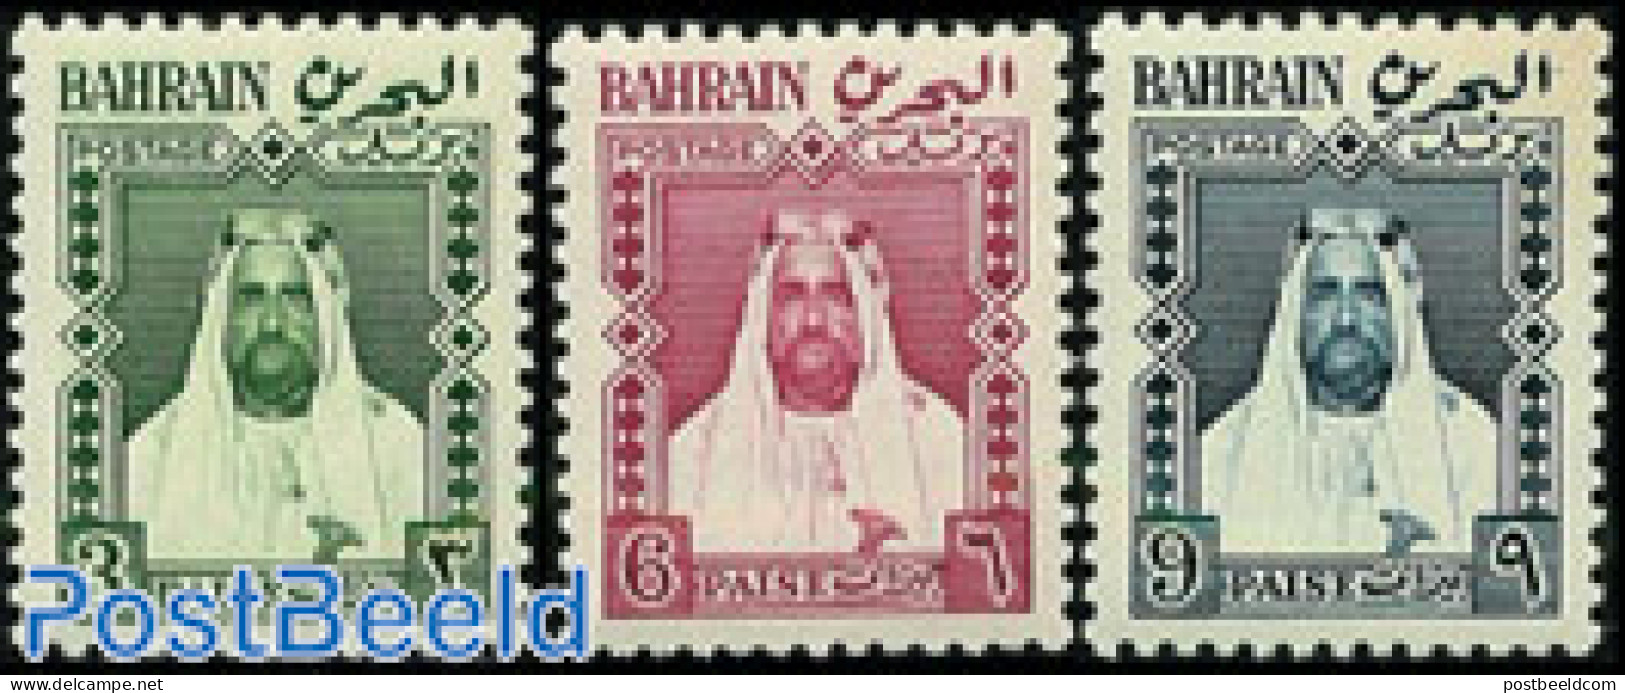 Bahrain 1957 Definitives 3v, Mint NH - Bahrain (1965-...)